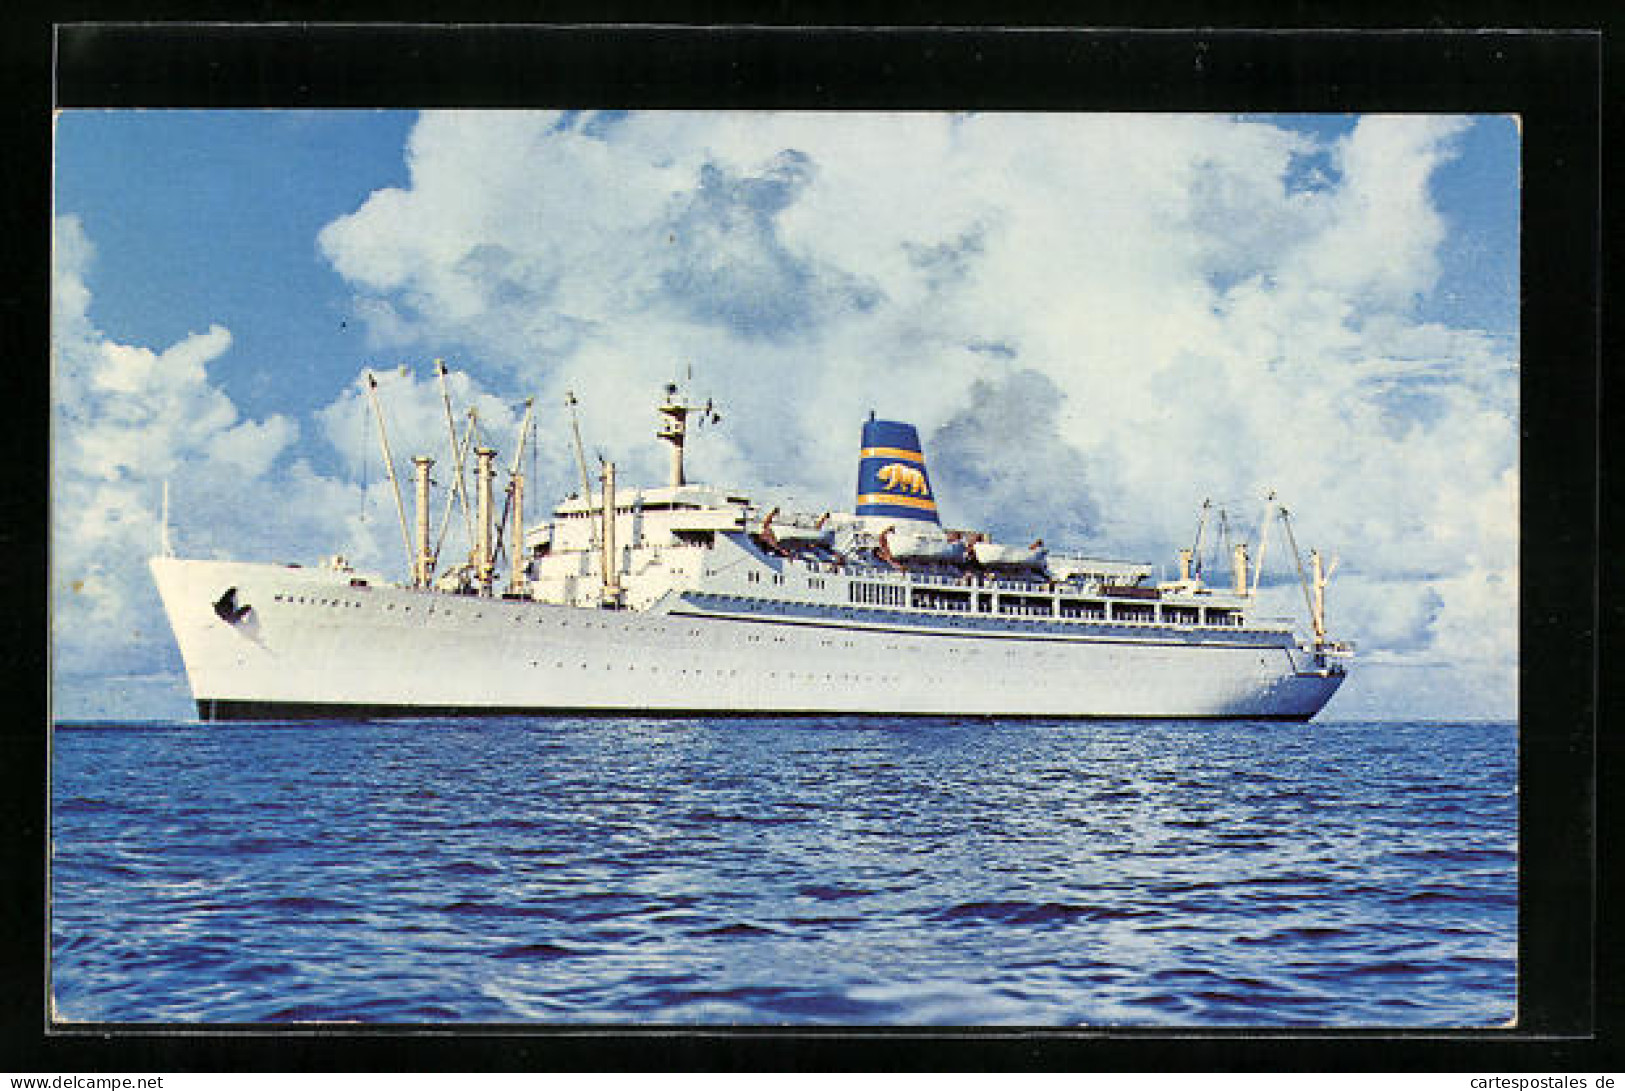 AK Passagierschiff SS Mariposa Auf Ruhiger See  - Paquebots